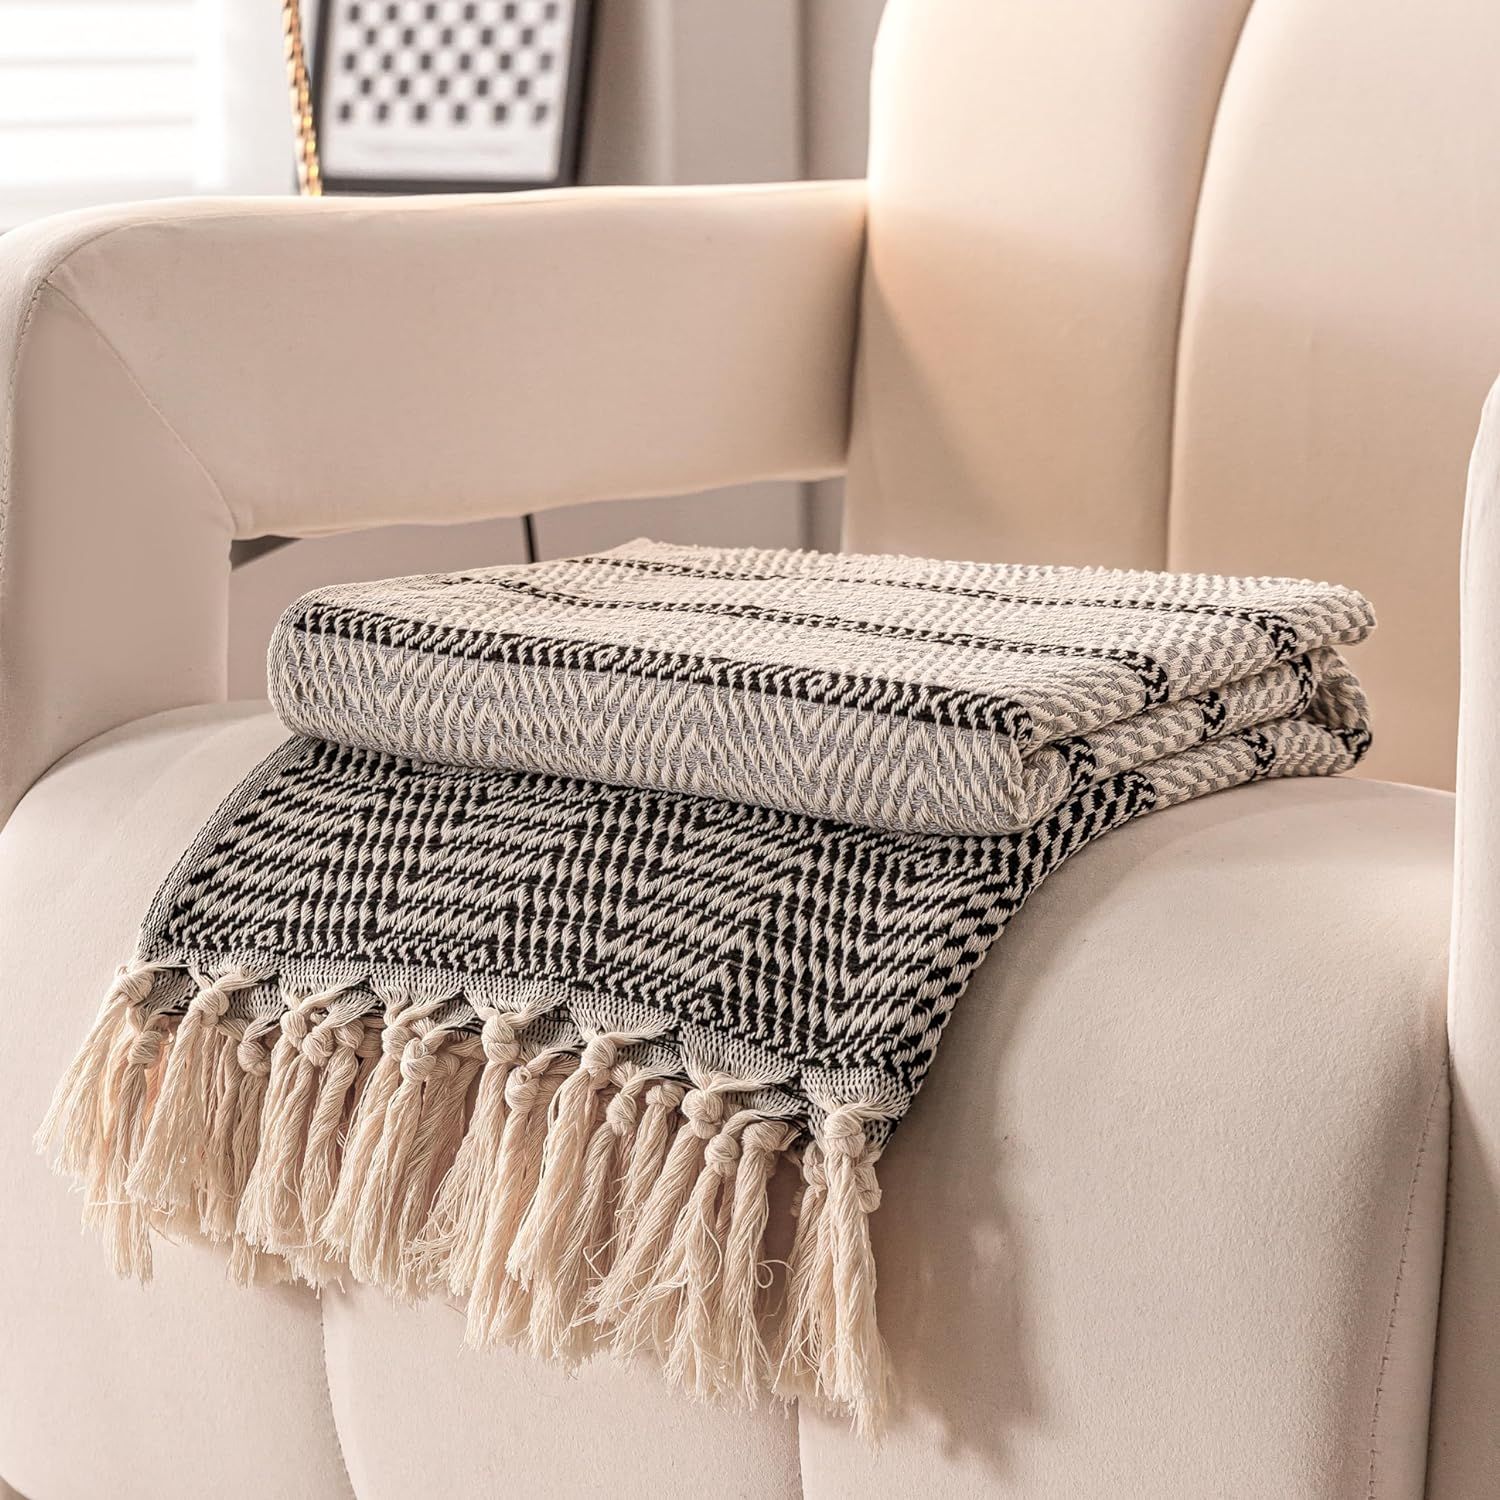 Peshtemania Premium Cotton Boho Throw Blanket |50”x60”| Grey Black and White Throw Blankets f... | Amazon (US)